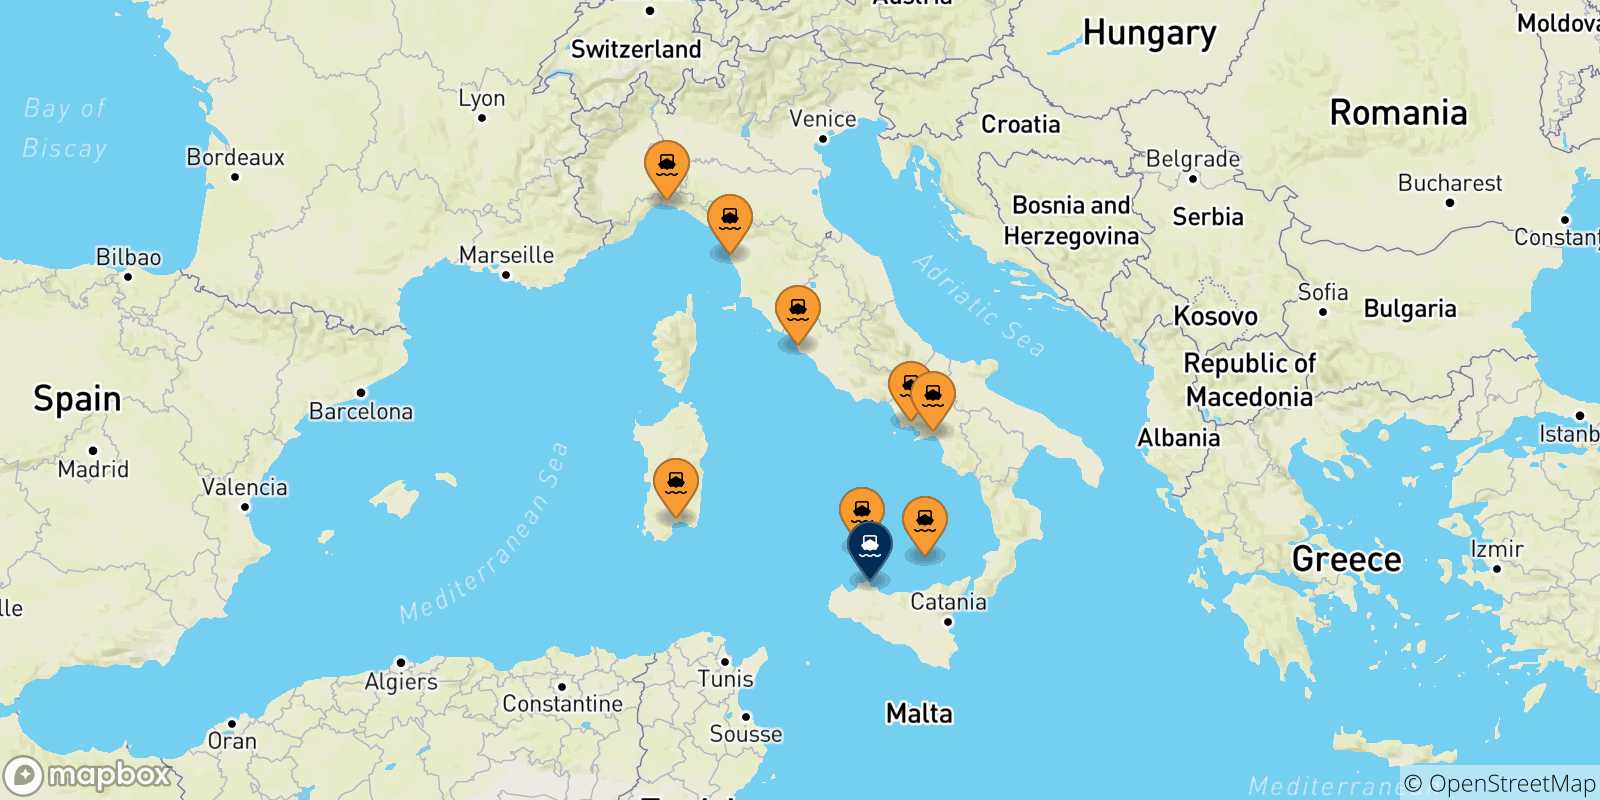 Mappa delle possibili rotte tra l'Italia e Palermo